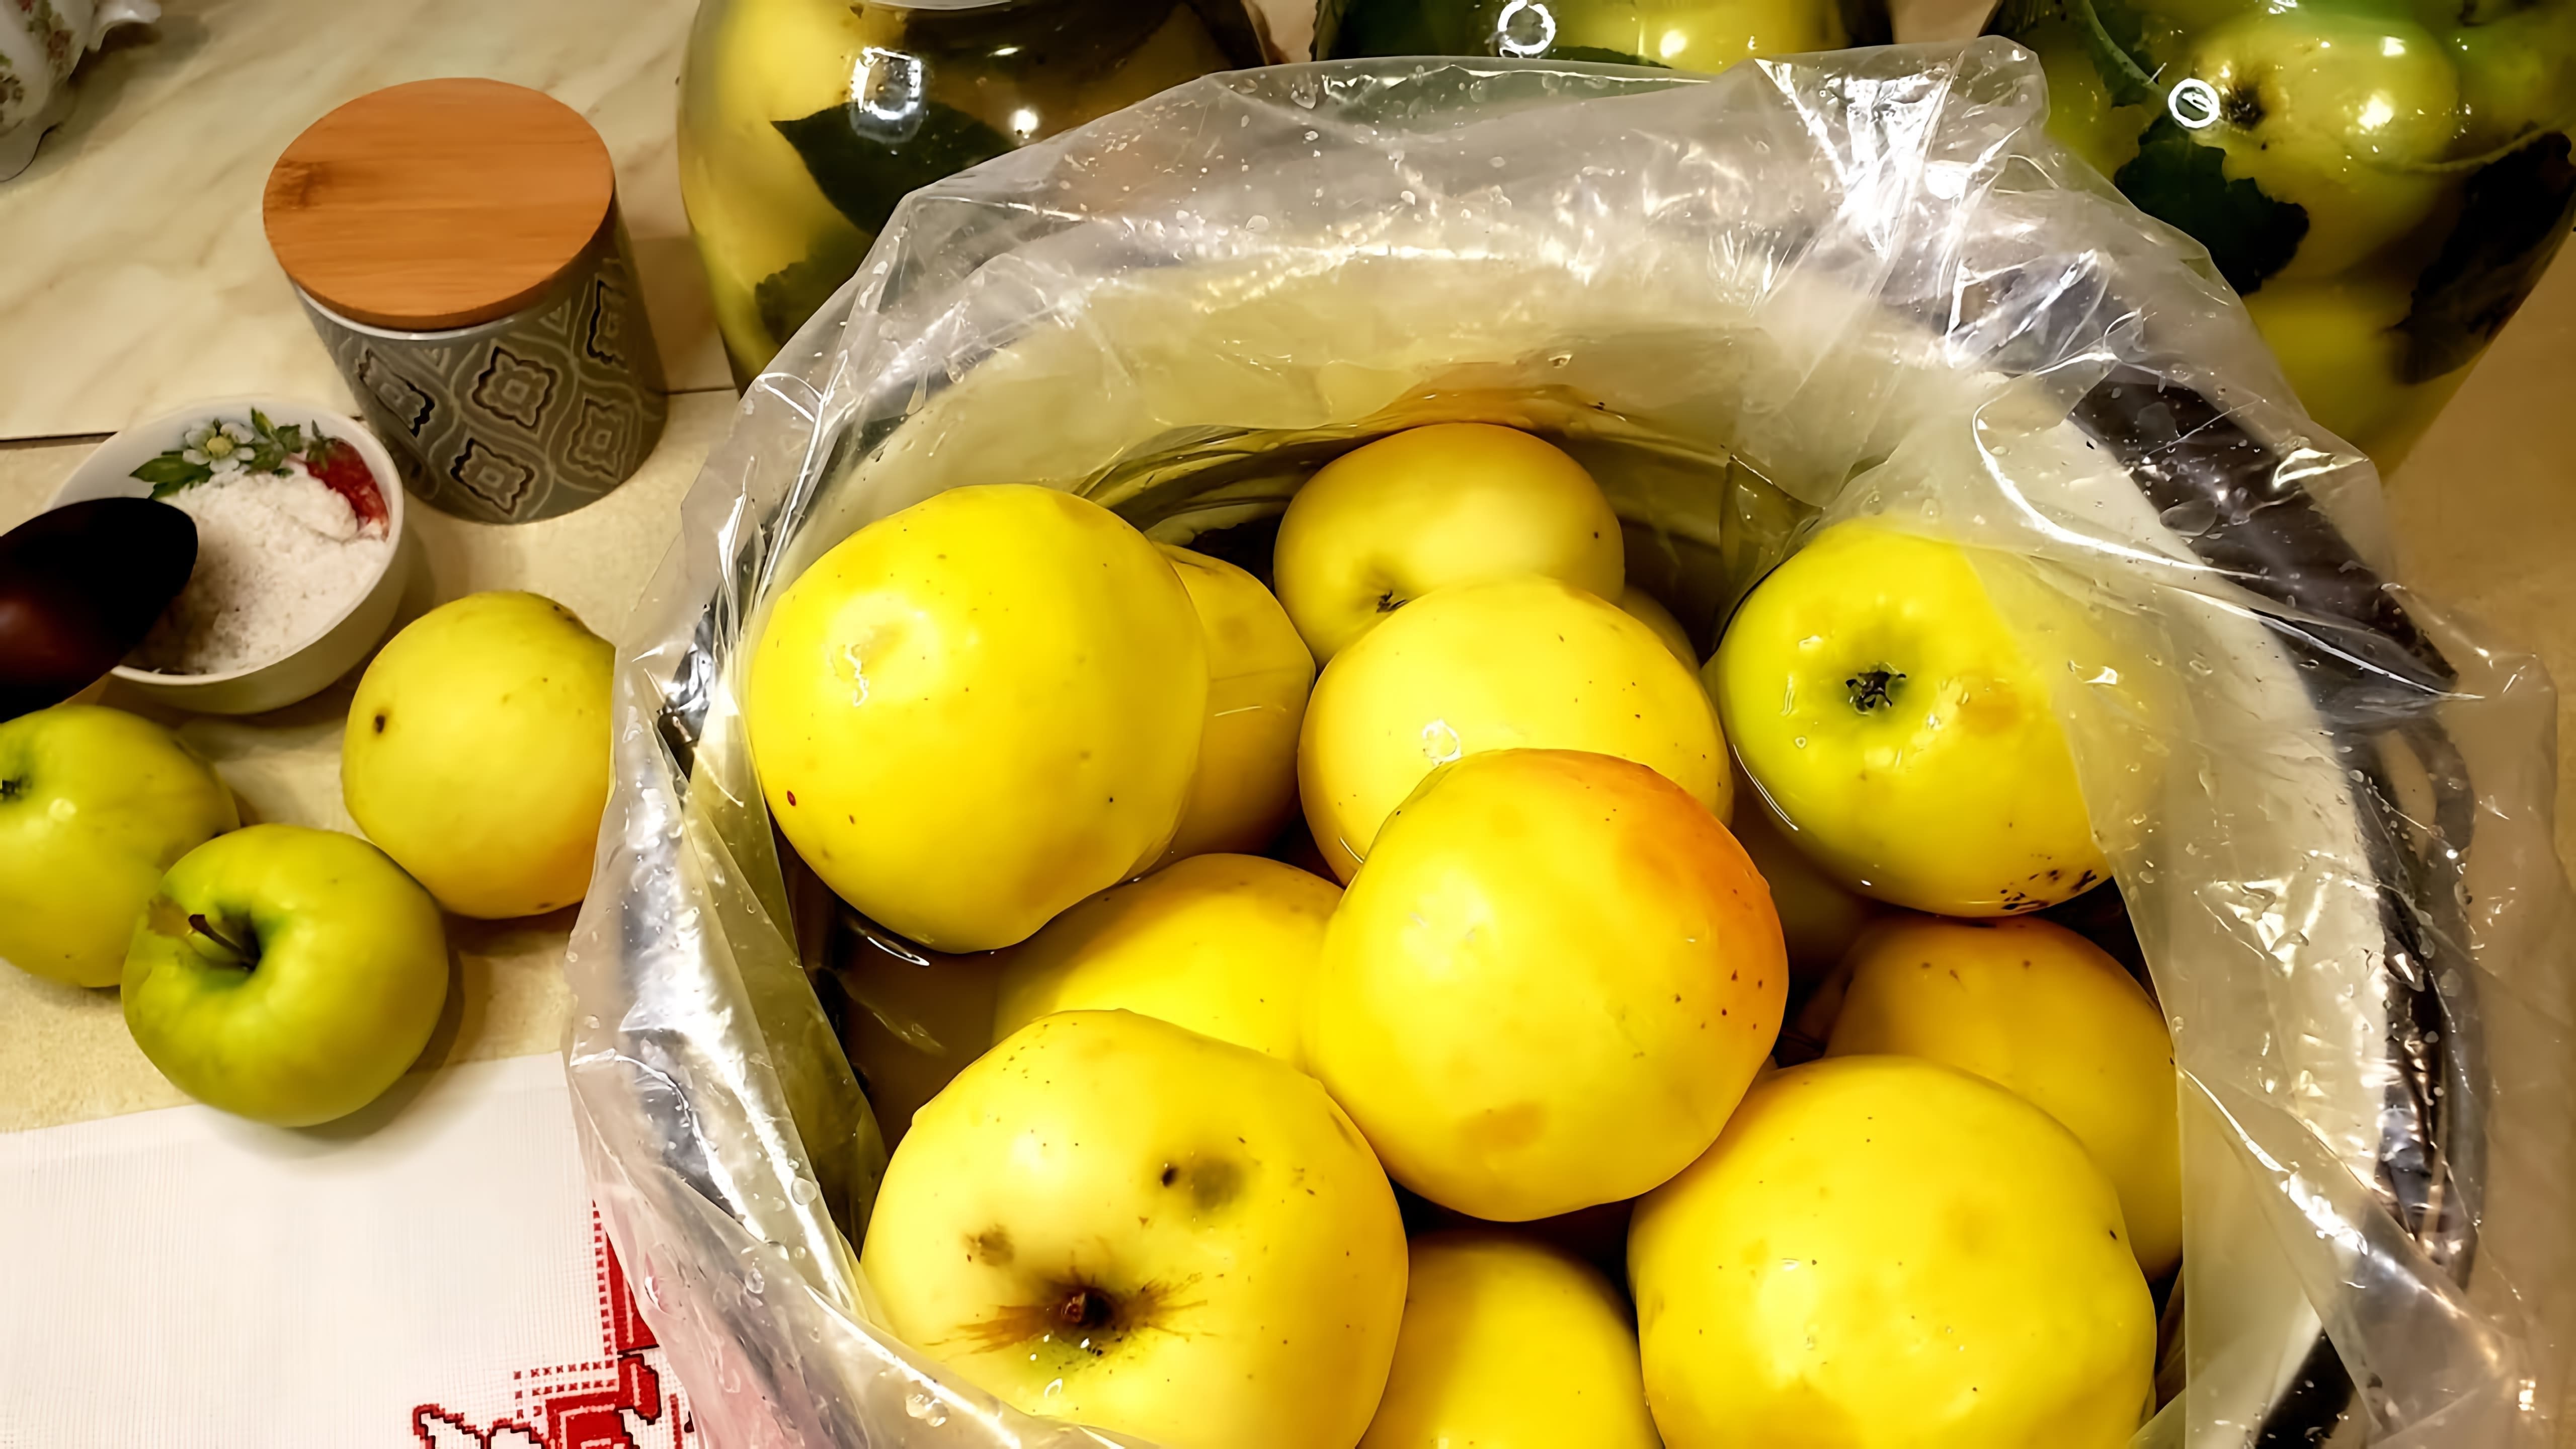 В этом видео демонстрируется процесс приготовления квашеных яблок по рецепту бабушки автора